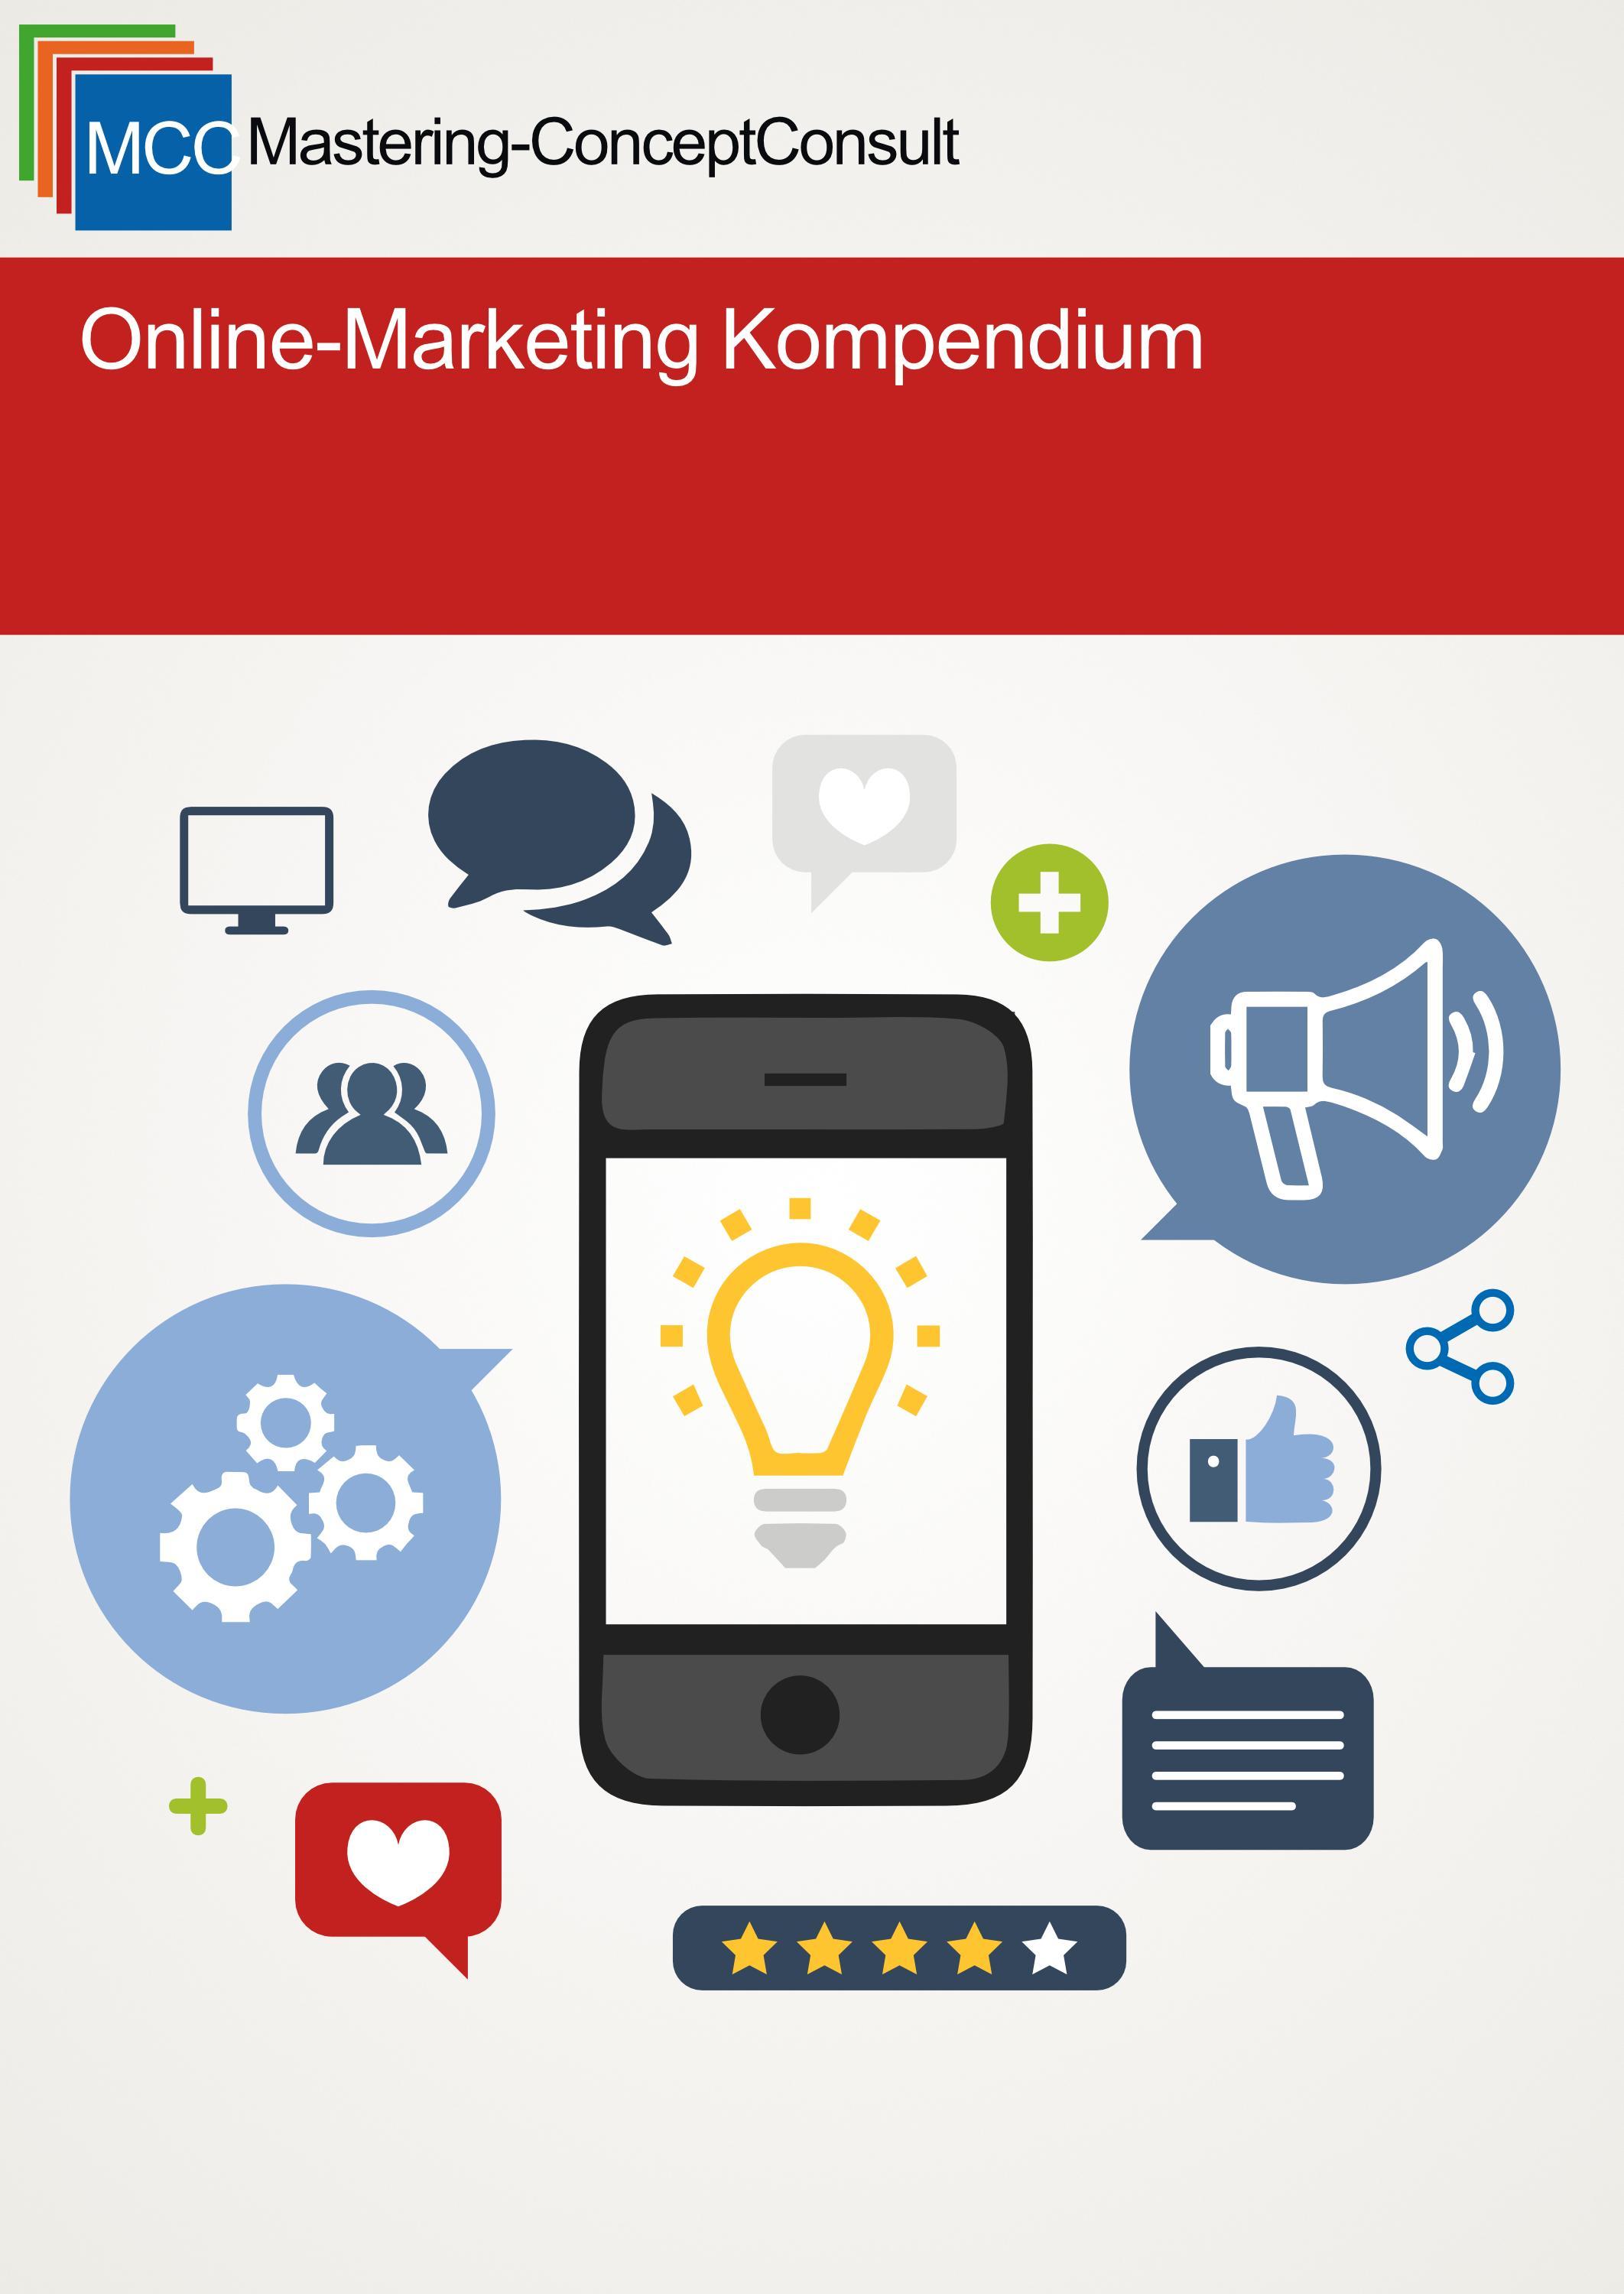 Online Marketing Kompendium / MCC Online-Marketing Bd.1